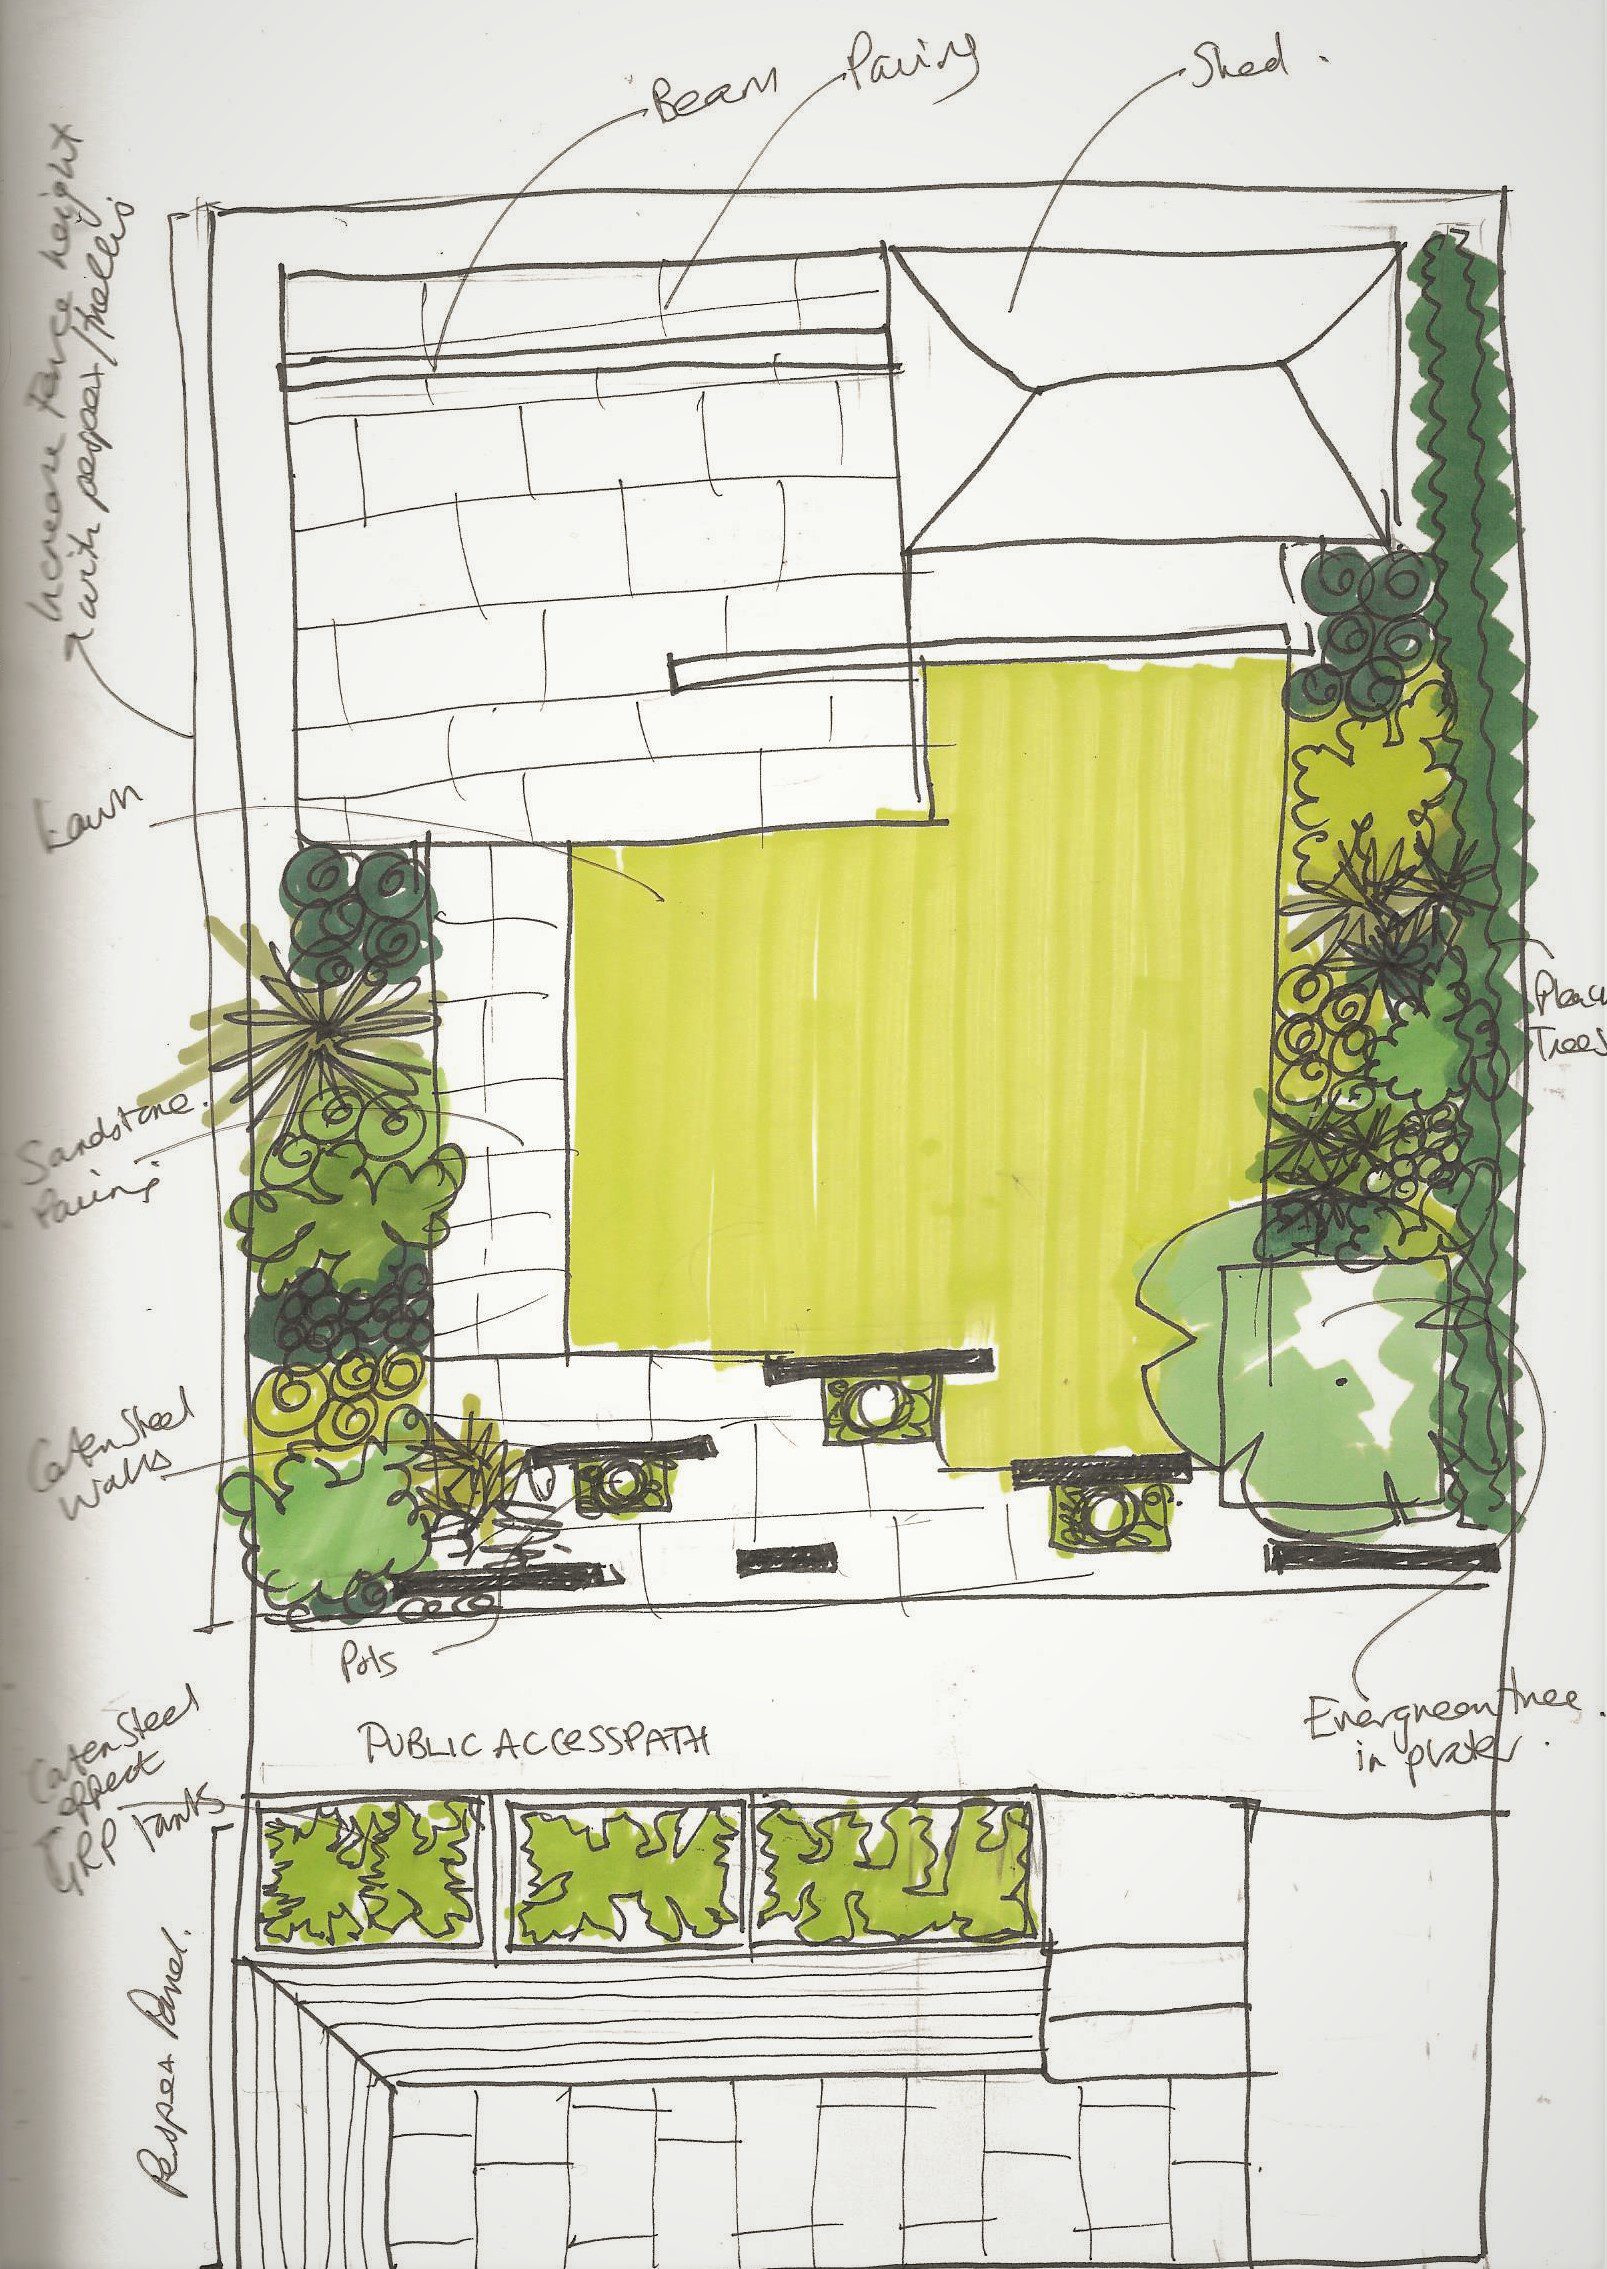 East-facing garden design sketches